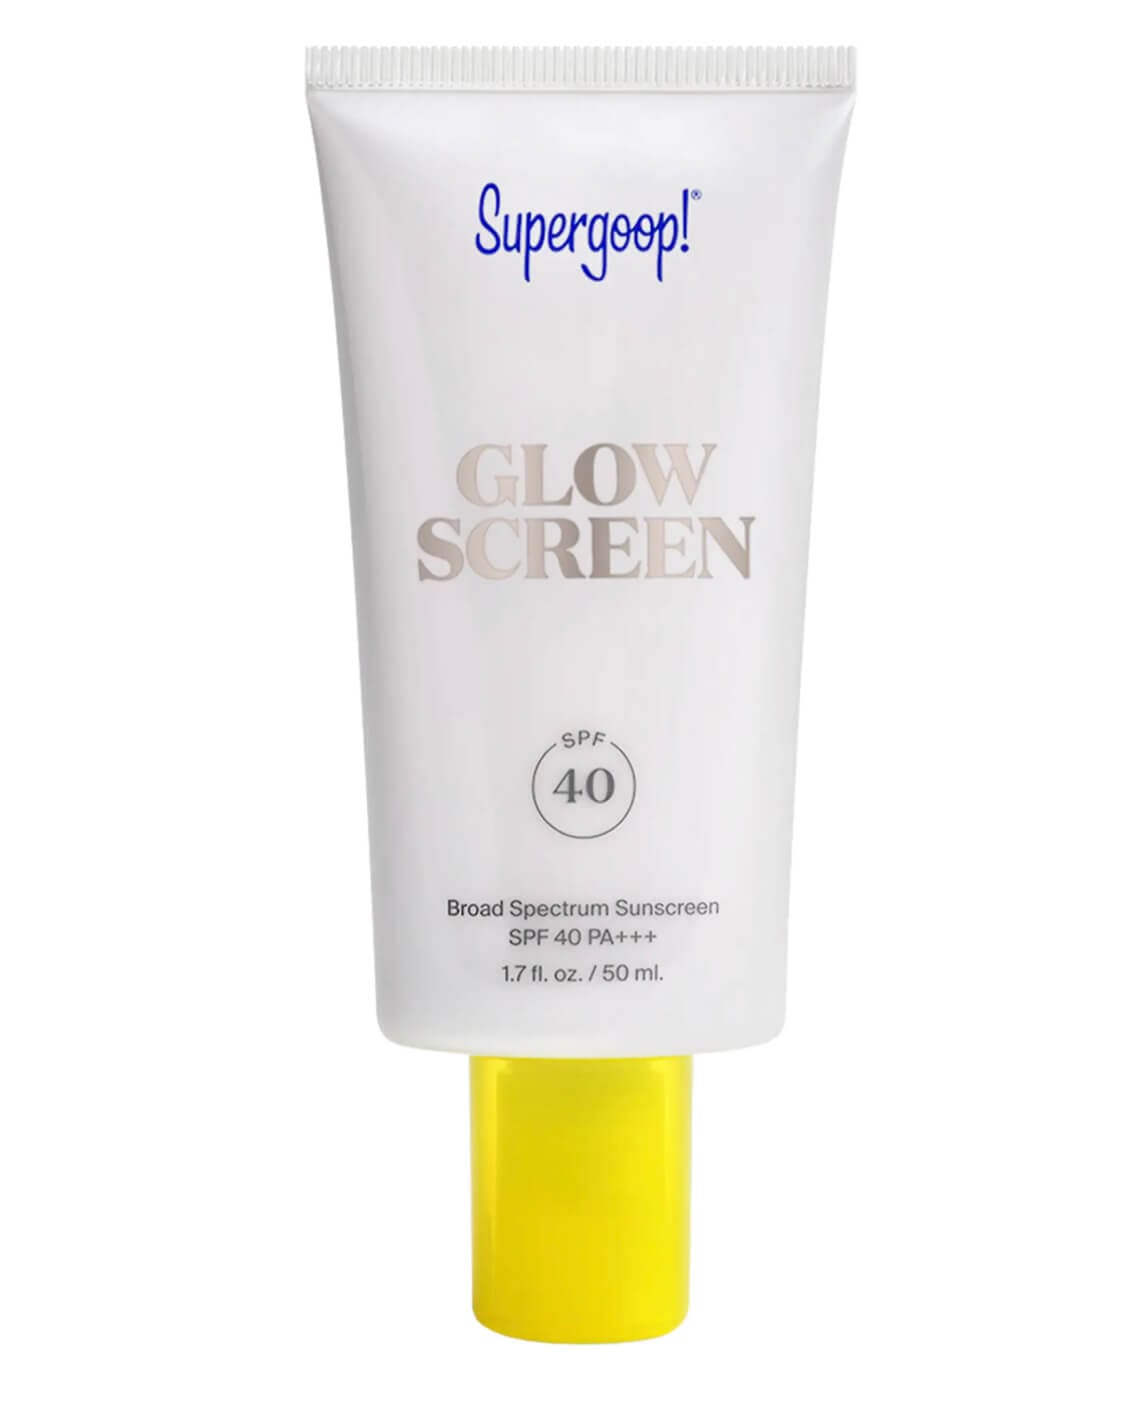 Glowscreen Sunscreen SPF 40 by Supergoop!